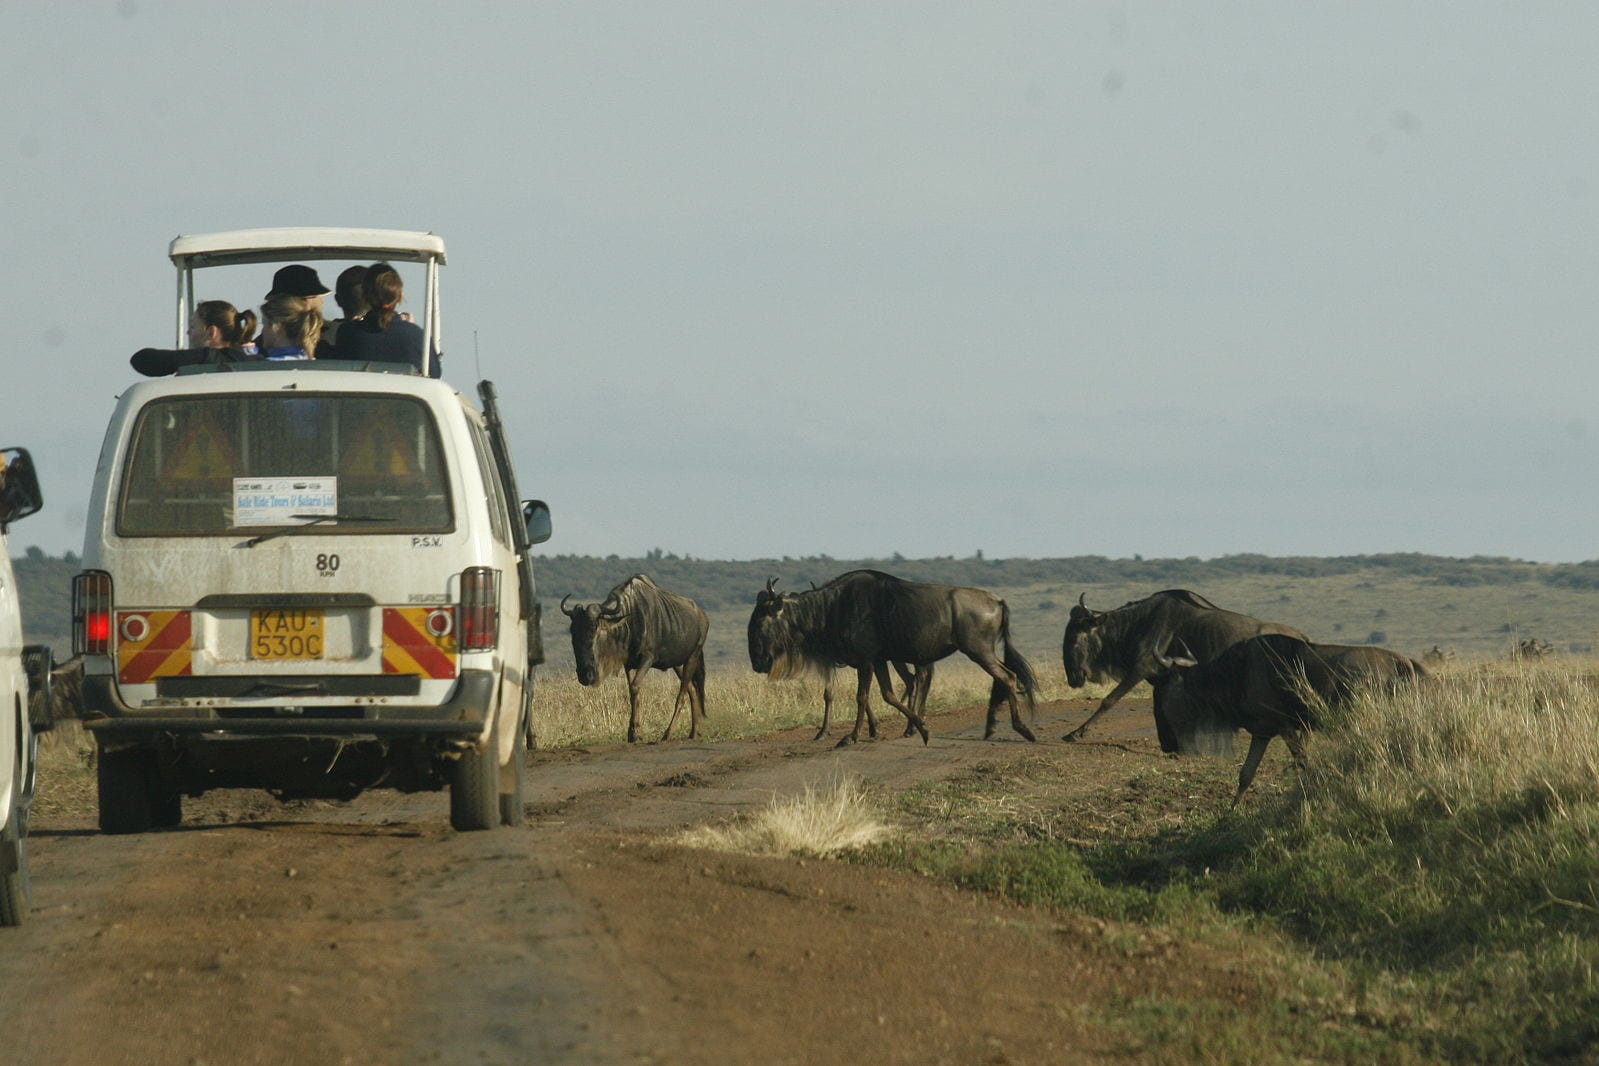 Safari Experiences in the World